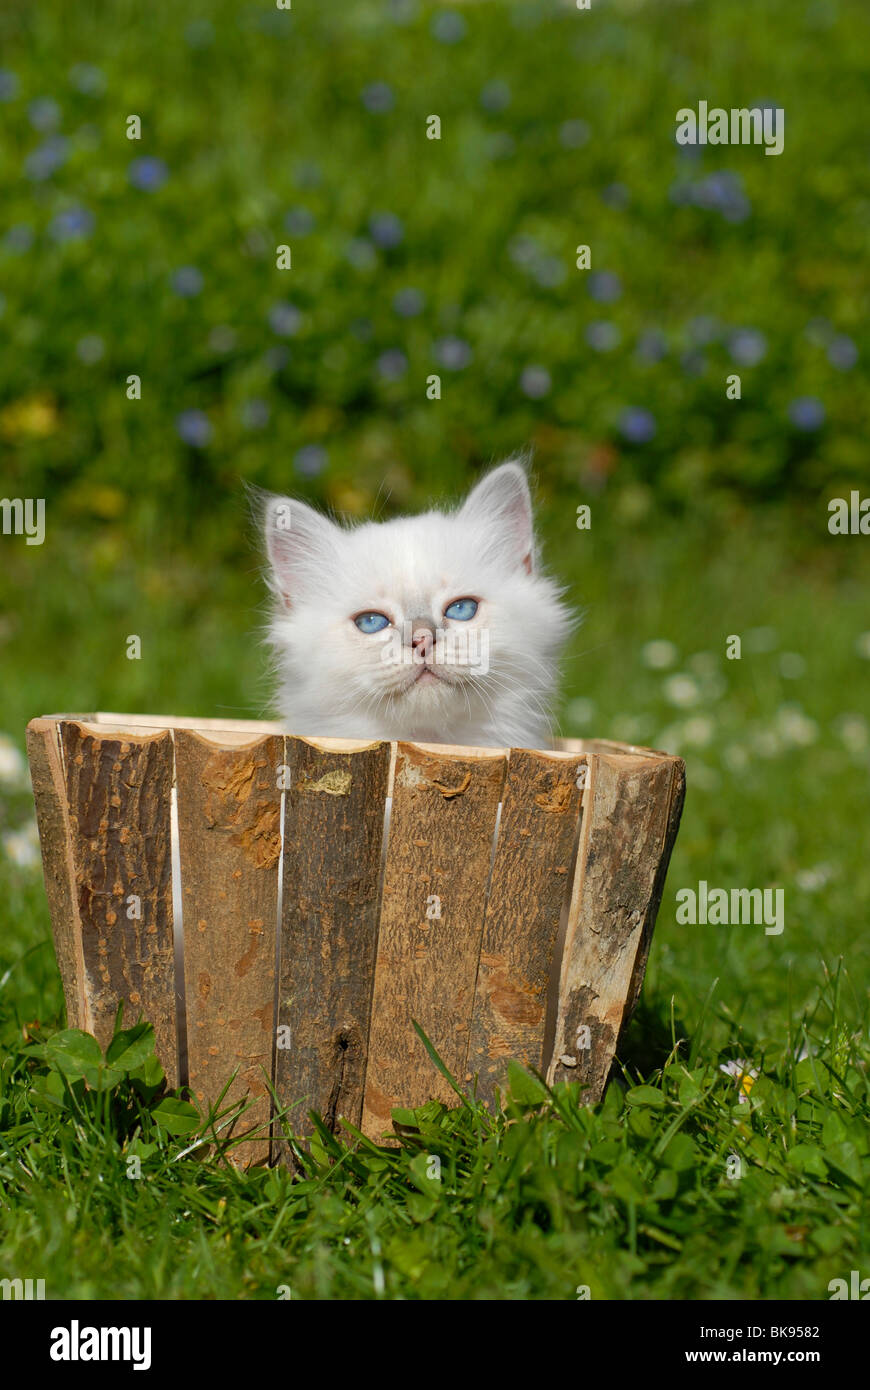 Birman kitten in a planter Stock Photo